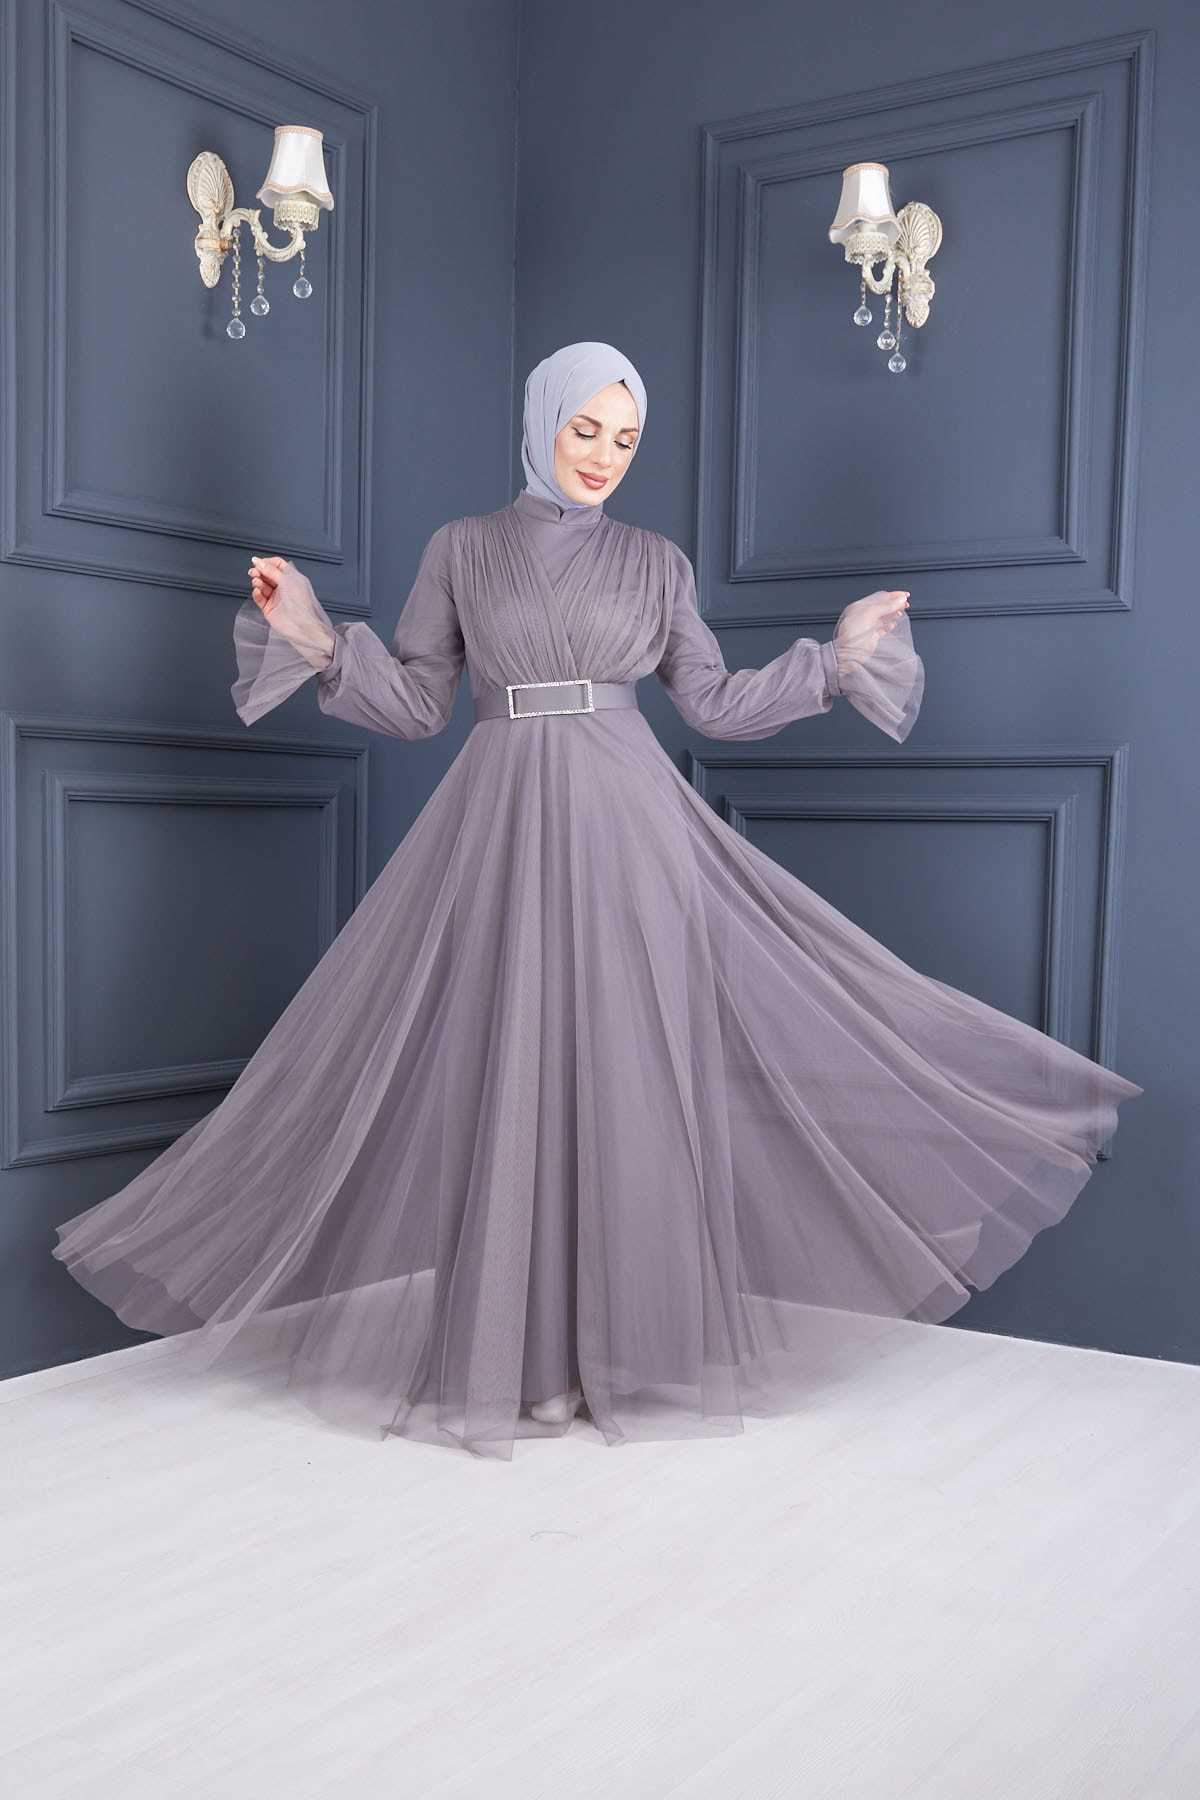 فروش لباس شب پوشیده زنانه پاییزی برند Moda Echer رنگ نقره ای کد ty113483873